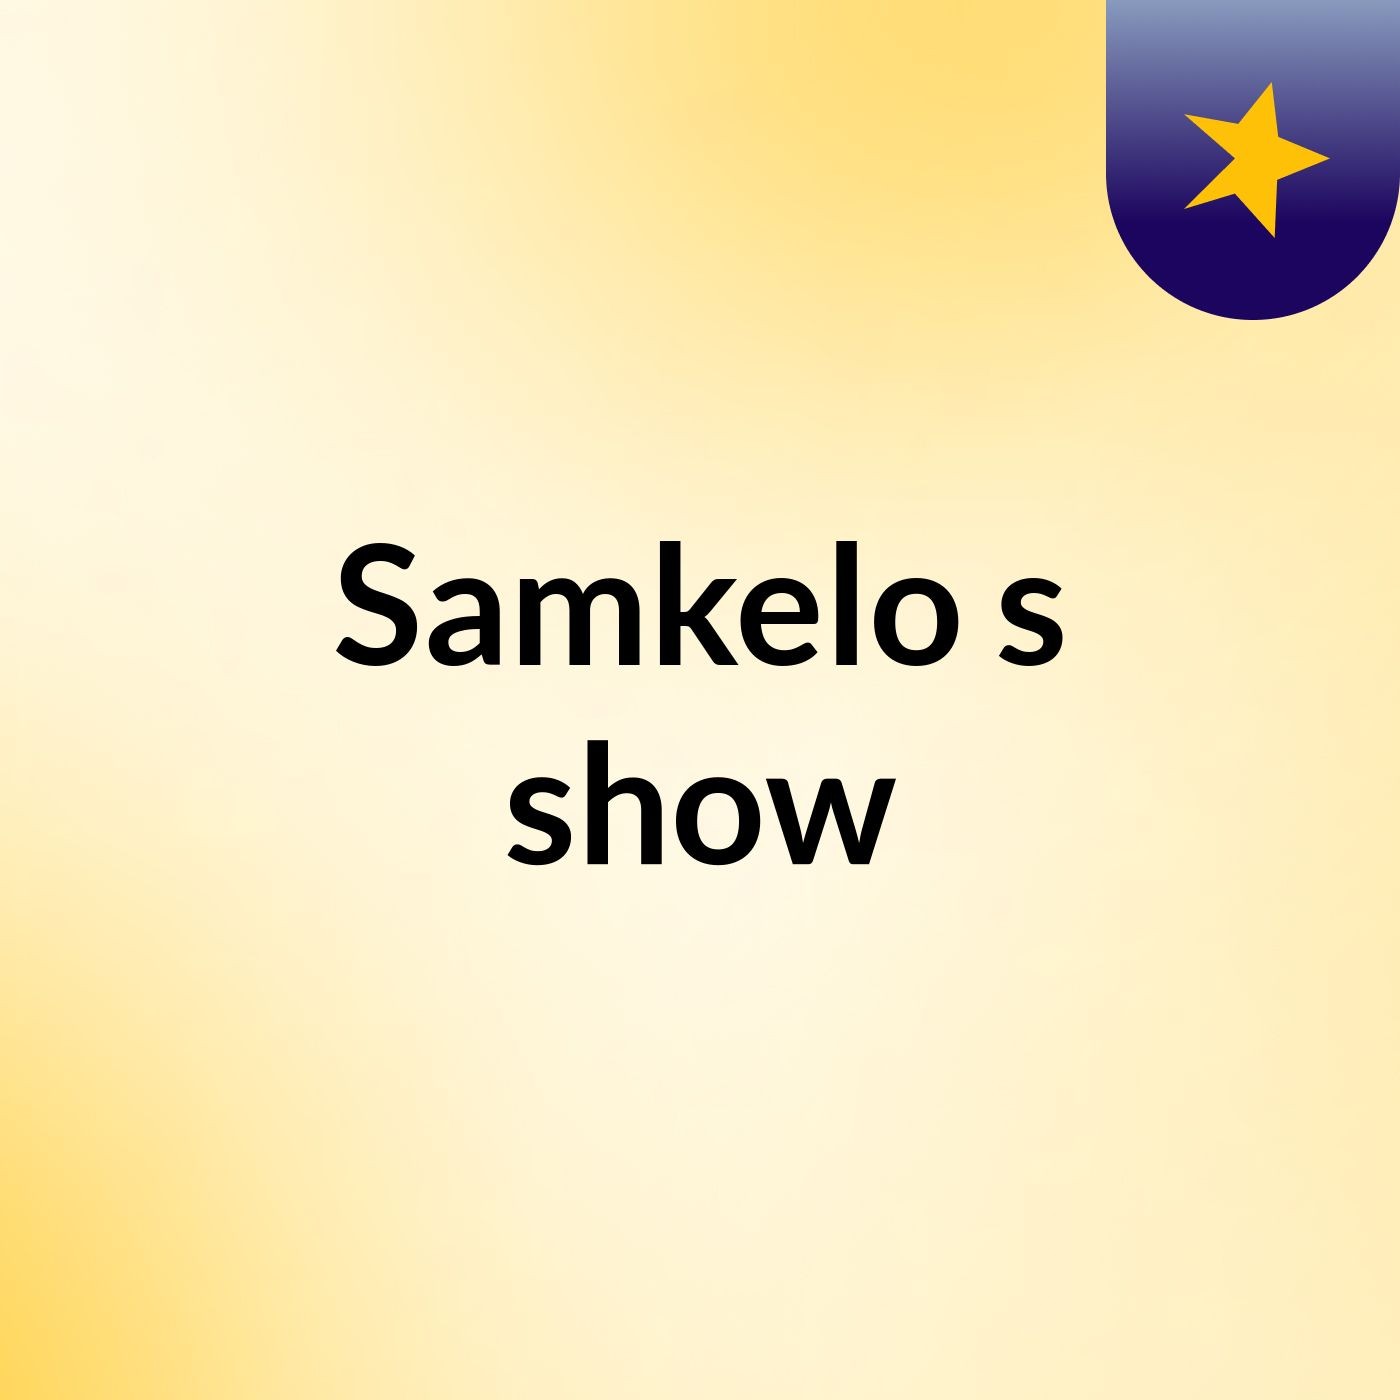 Samkelo's show